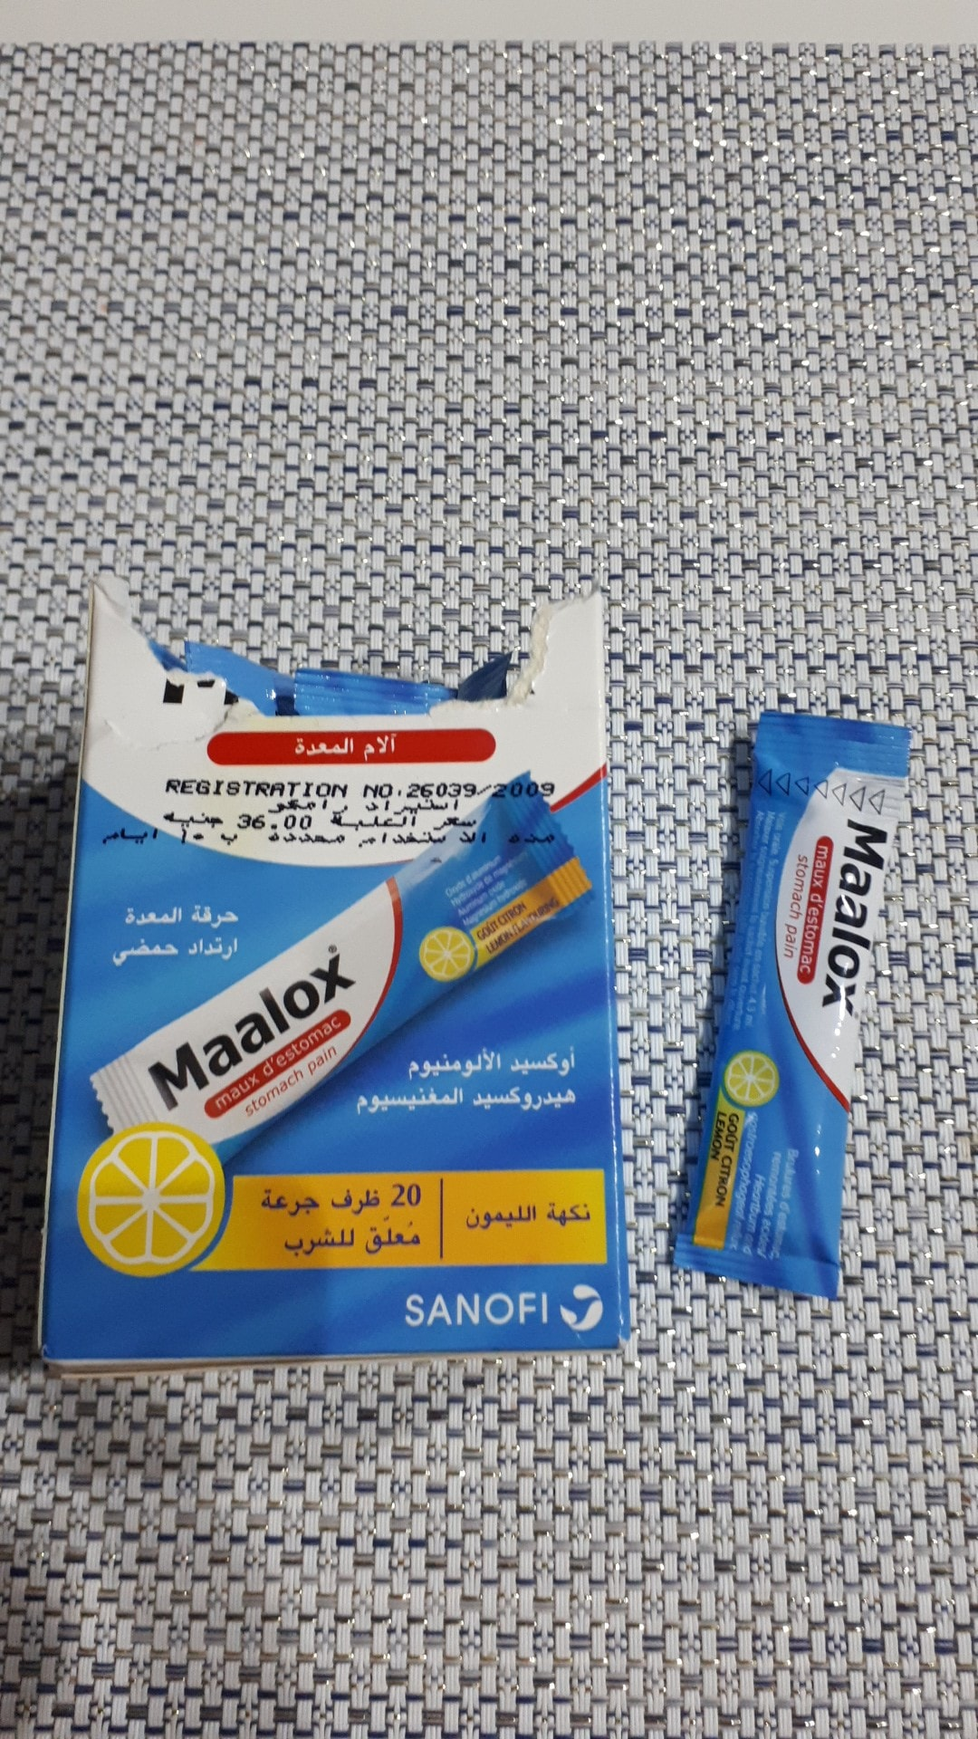 Léky, které si Češi vozí z dovolené v Egyptě